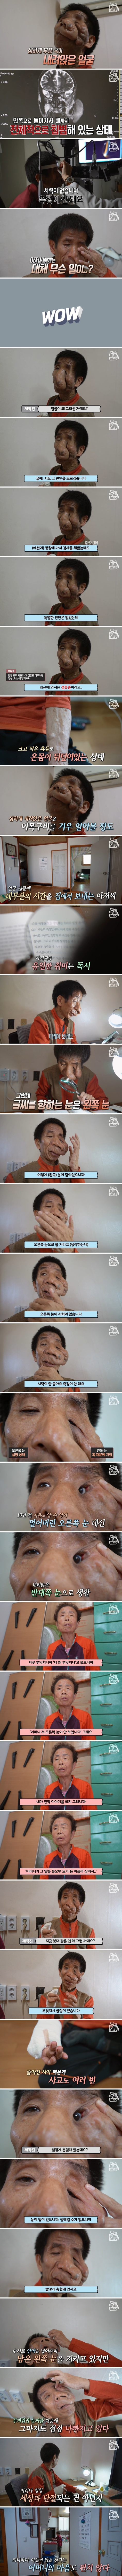 얼굴을 뒤덮은 혹, 신경섬유종을 앓고 있는 김진욱 씨의 사연 (1).jpg